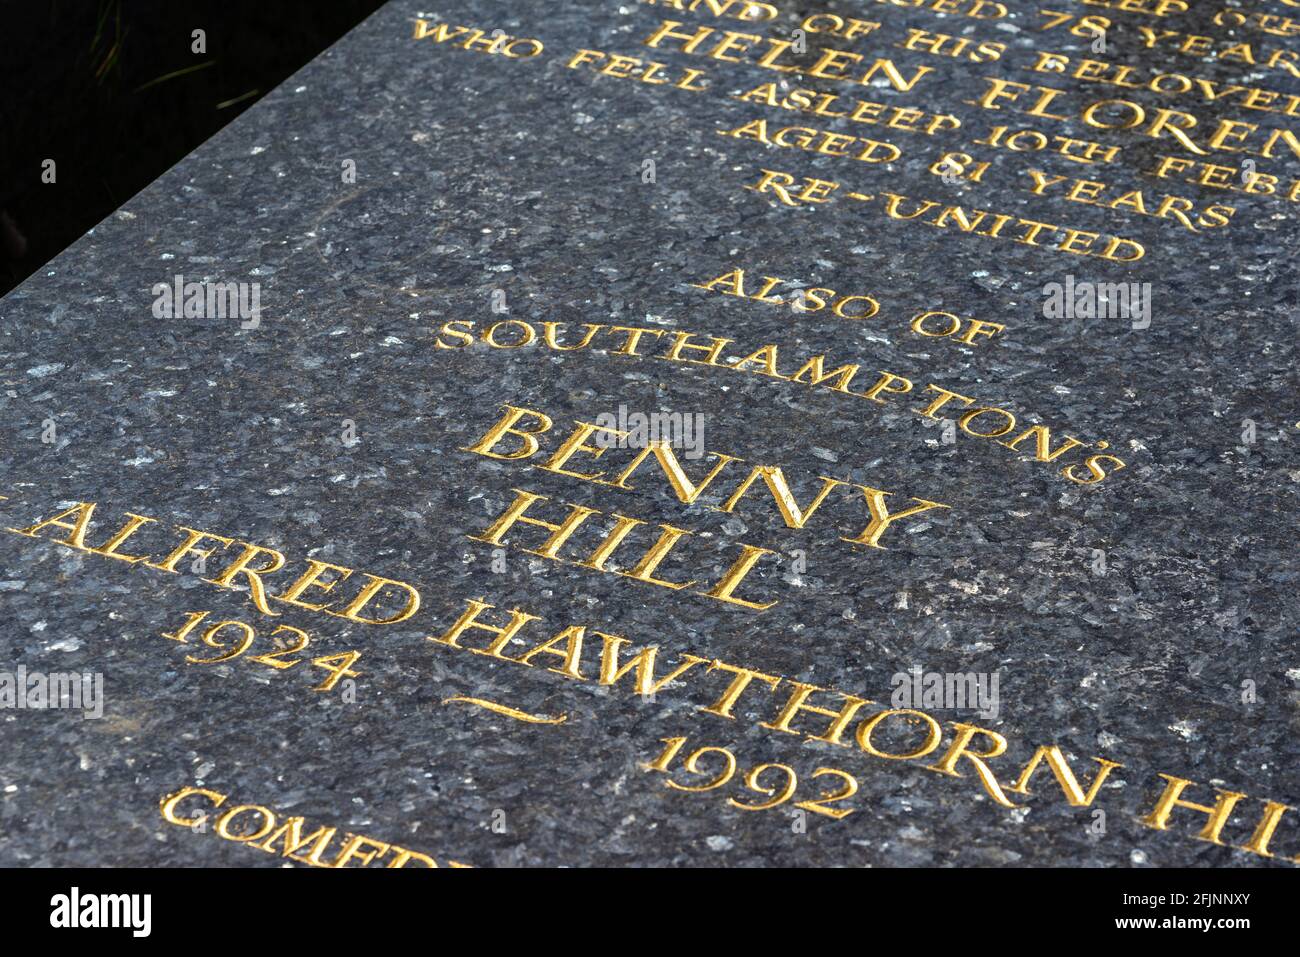 La tombe de Benny Hill - comédien britannique de Southampton, Hollybrook Cemansau, Angleterre, Royaume-Uni Banque D'Images